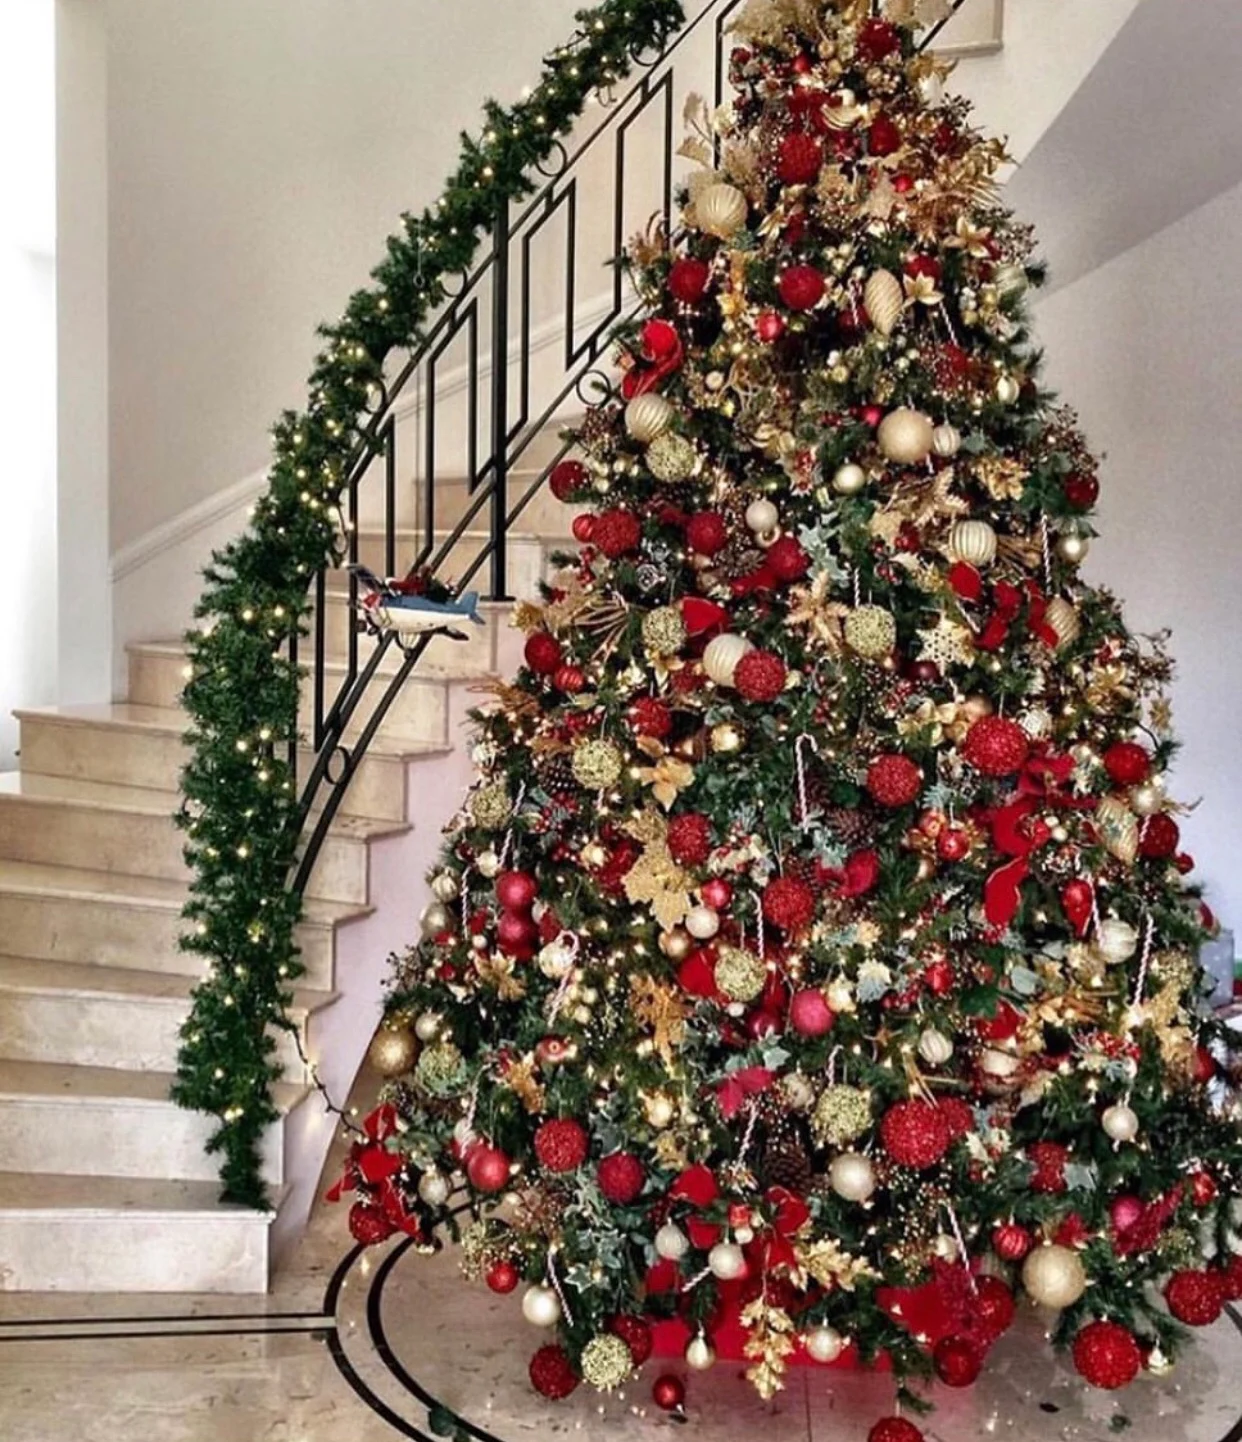 Un árbol de Navidad ricamente decorado en rojo y dorado